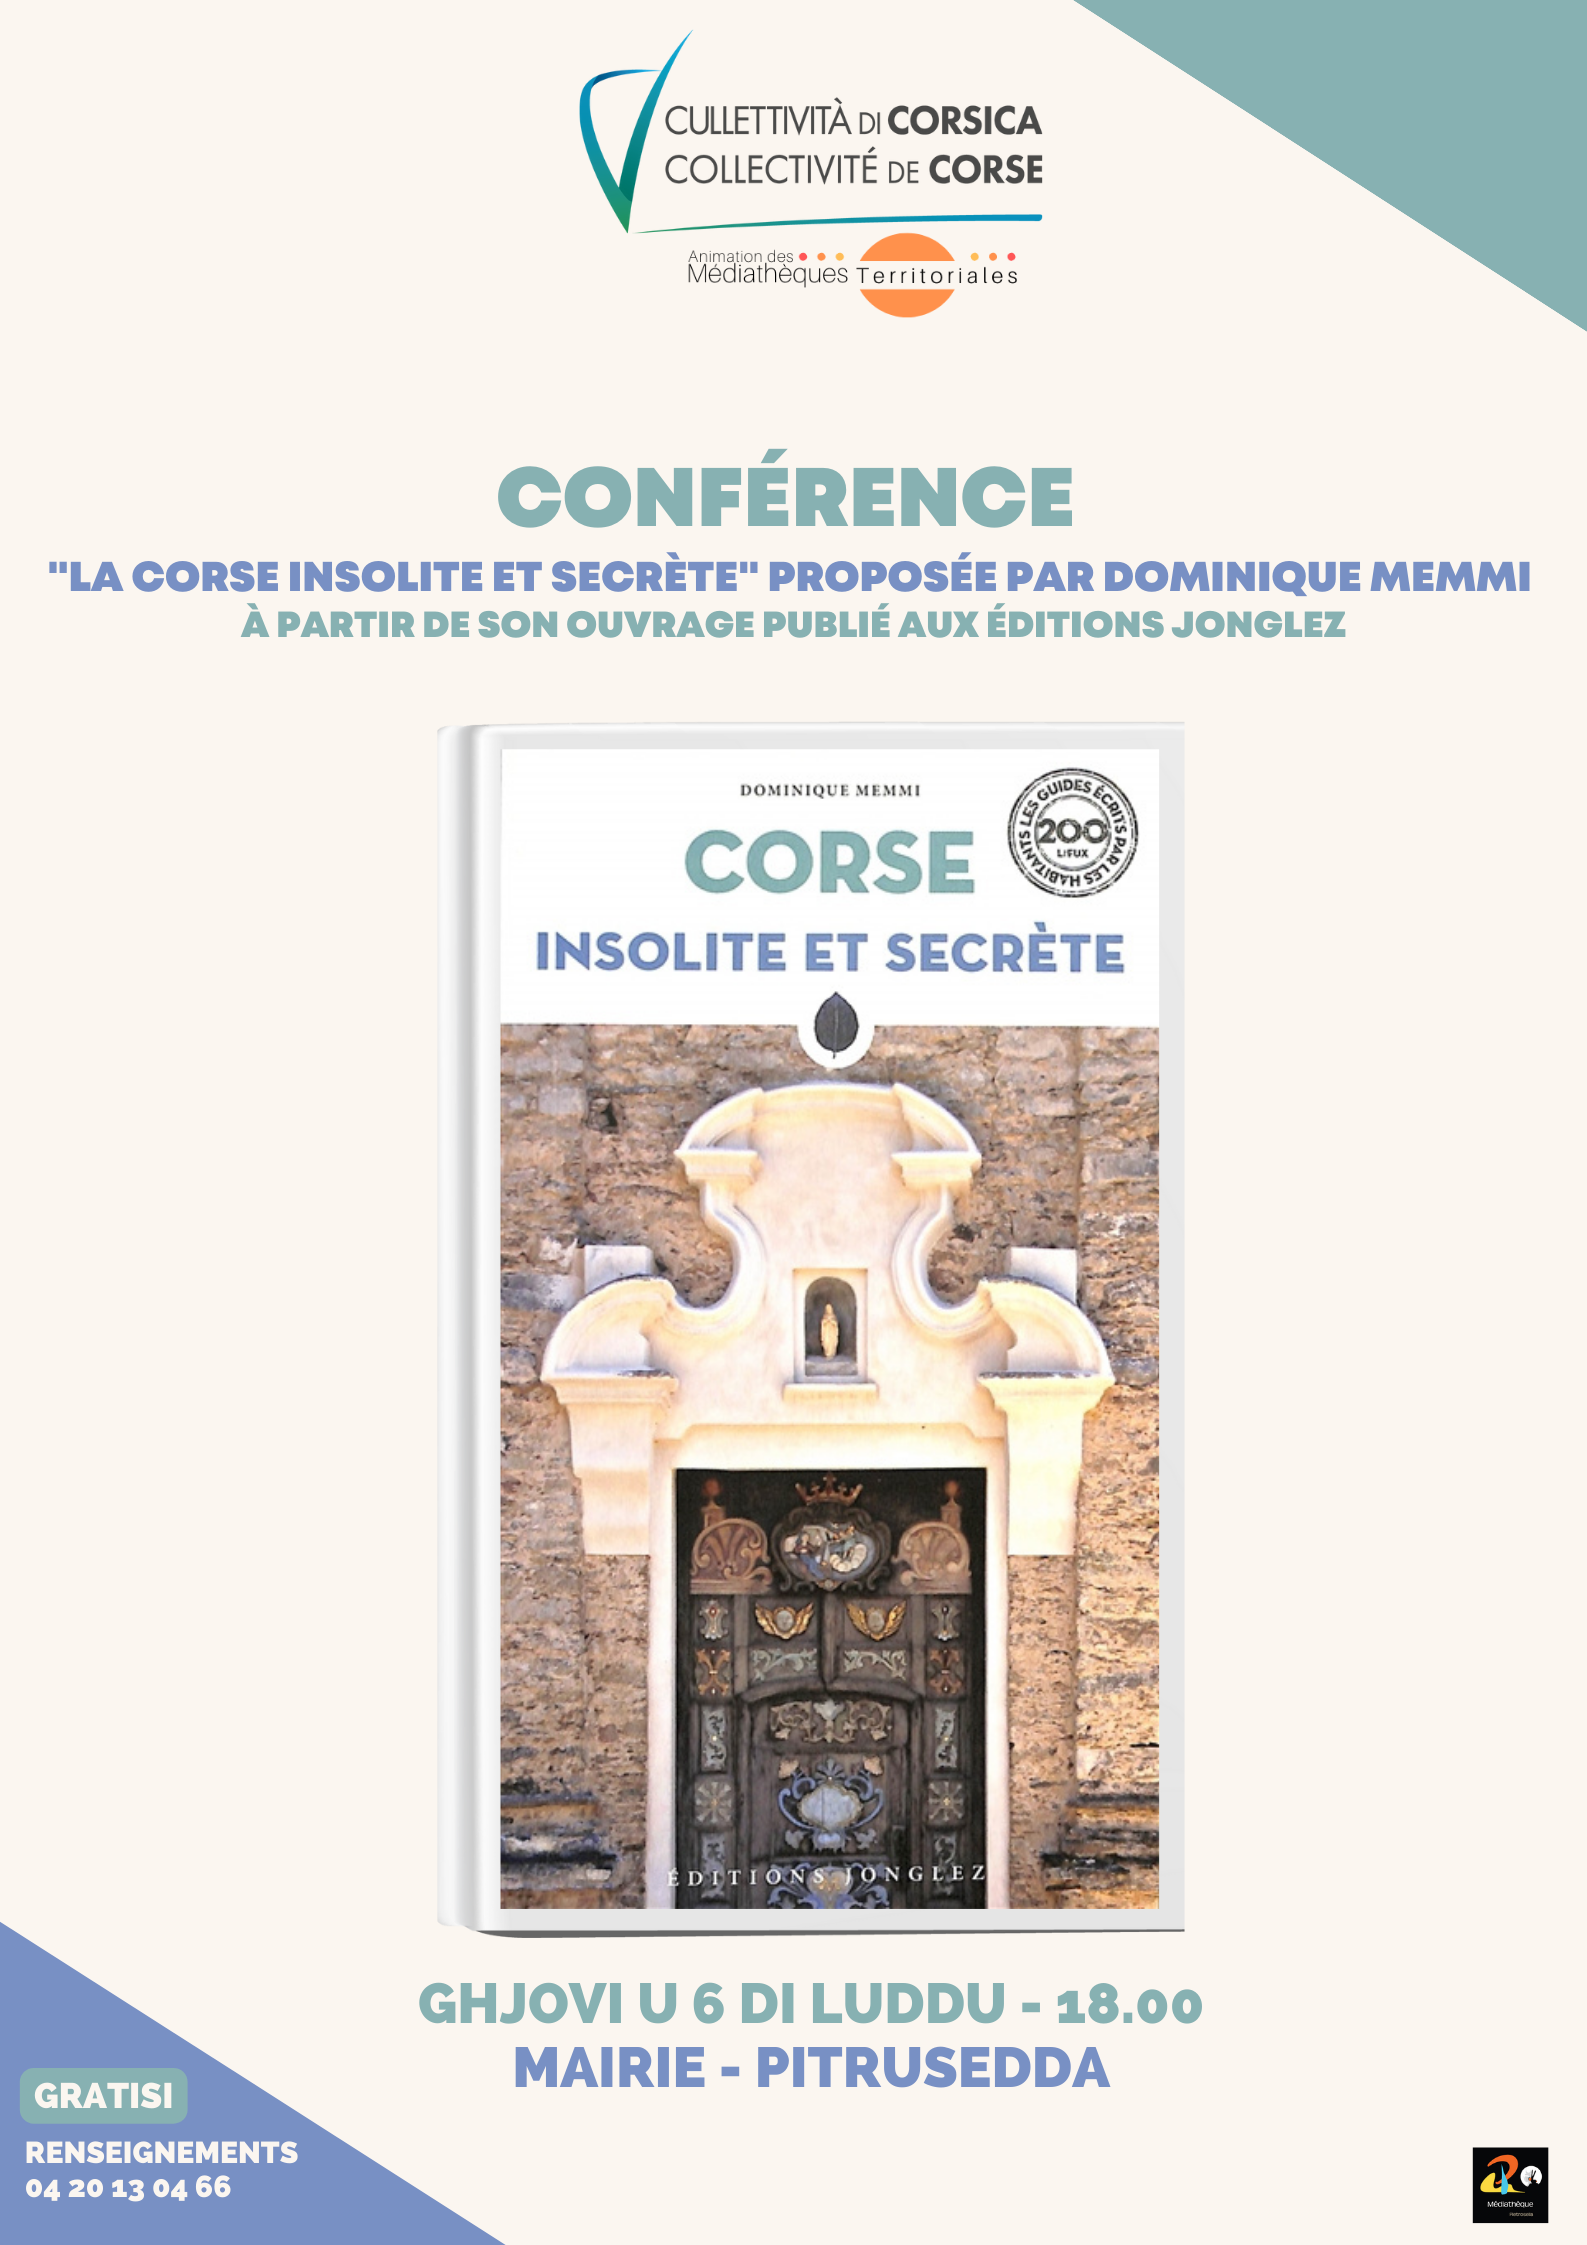 Conférence "La Corse insolite et secrète" par Dominique Memmi -  Jeudi 6 juillet à 18h - Mairie de Pietrosella